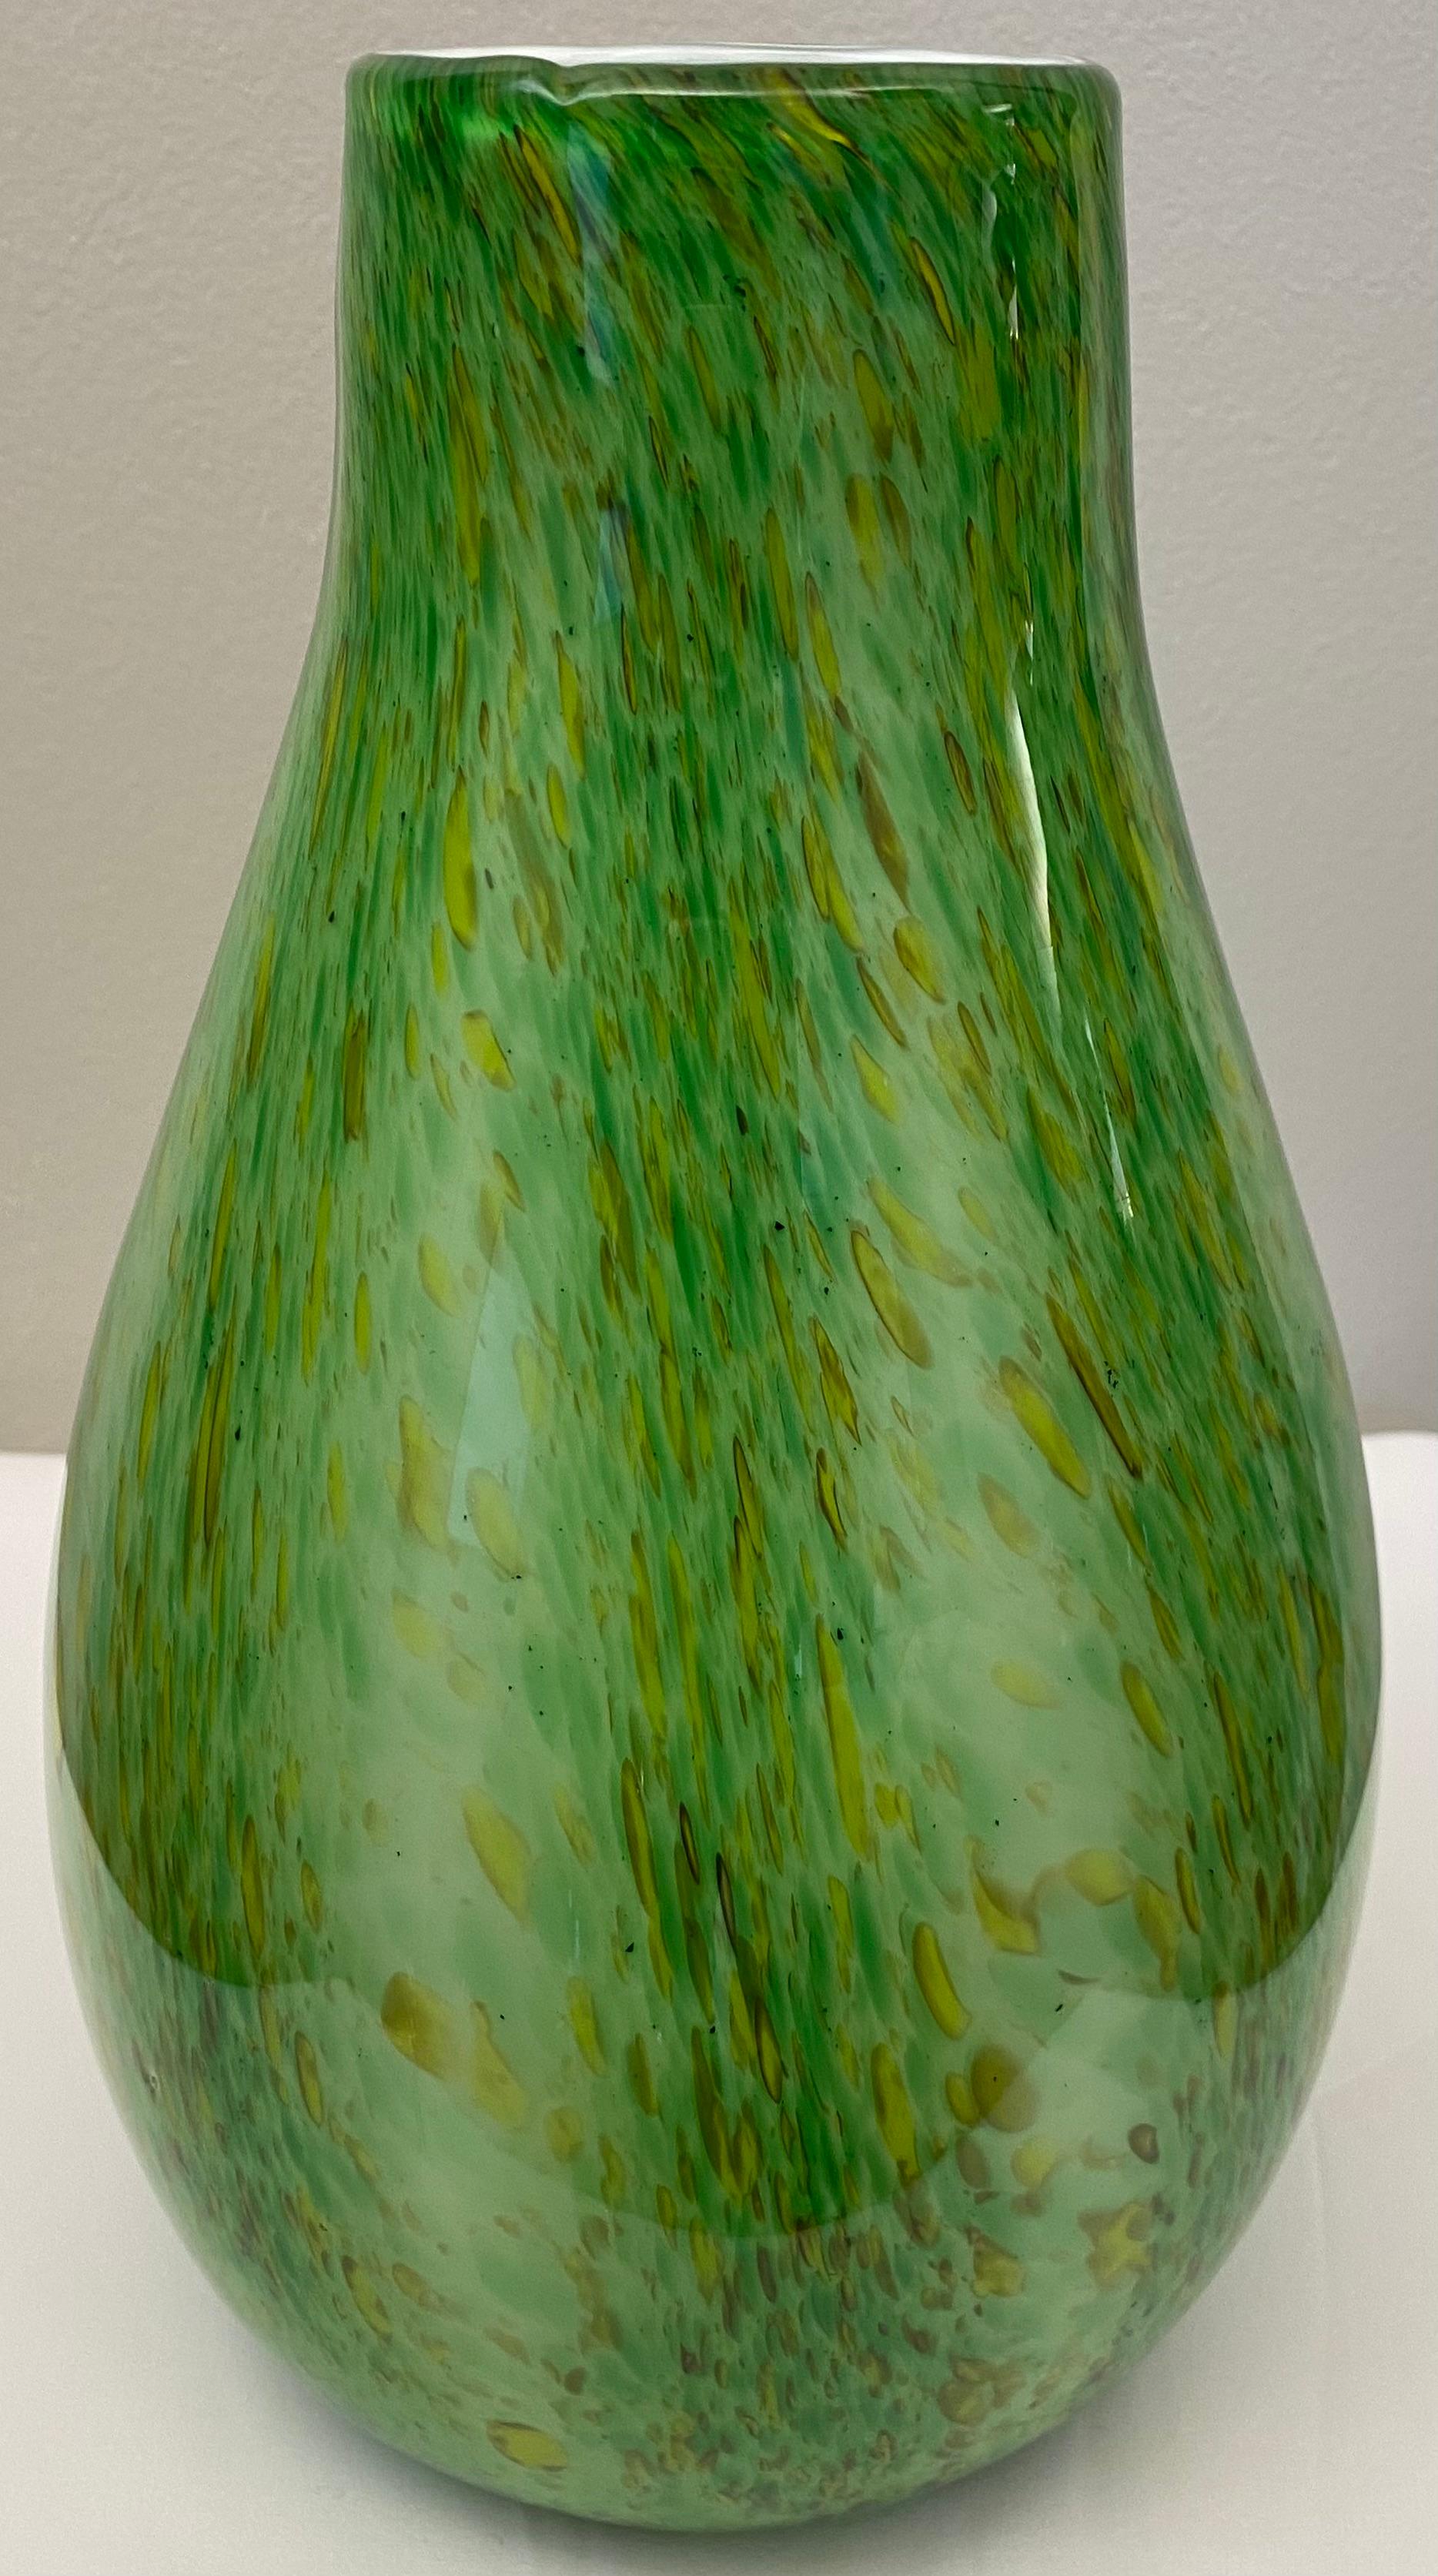 Eine einzigartige organische Vase aus modernem Kunstglas nach Entwürfen von Hilton McConnico, die in den 1990er Jahren geblasen wurde und vermutlich zu einer exklusiven Kollektion von Einzelstücken gehörte, die für Formia, Murano, entworfen